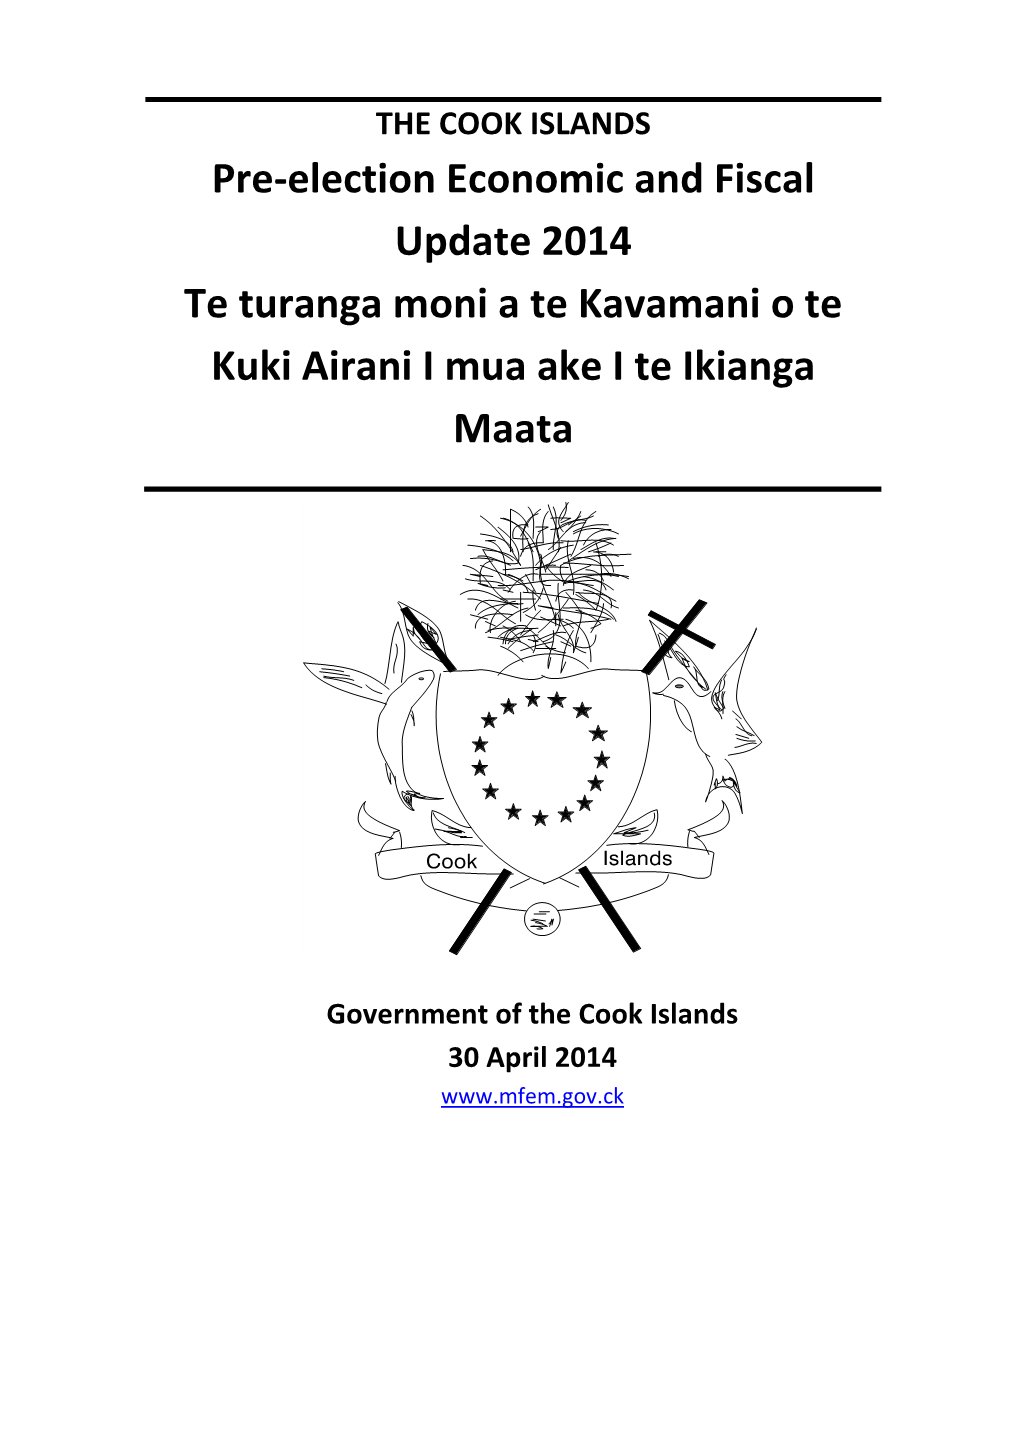 Pre-Election Economic and Fiscal Update 2014 Te Turanga Moni a Te Kavamani O Te Kuki Airani I Mua Ake I Te Ikianga Maata